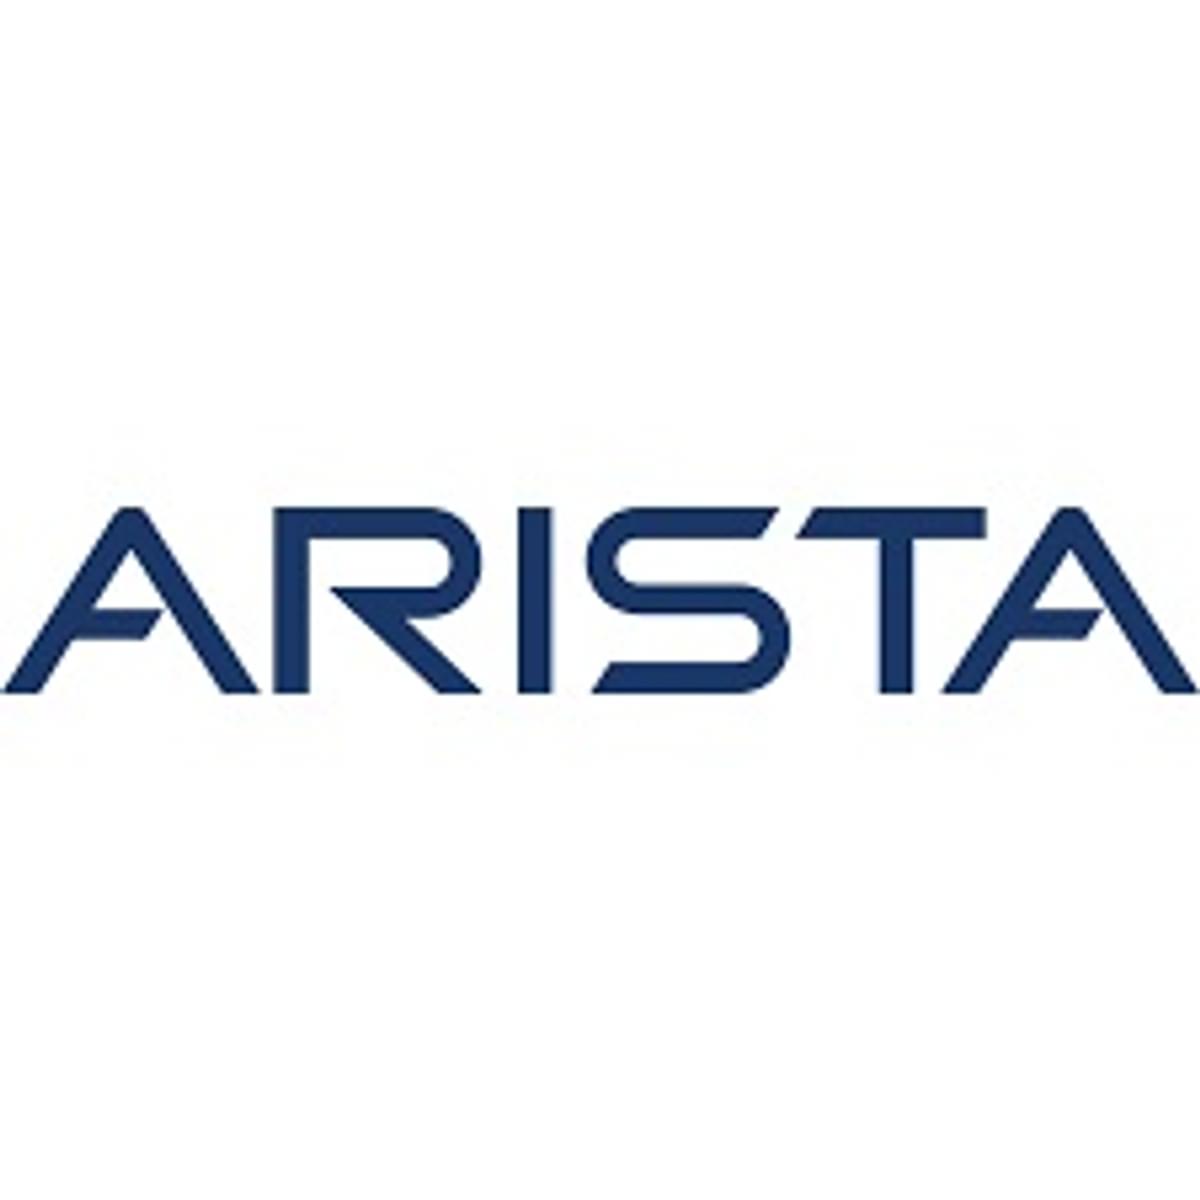 Arista introduceert 7130-serie switches voor lage latency-netwerken image